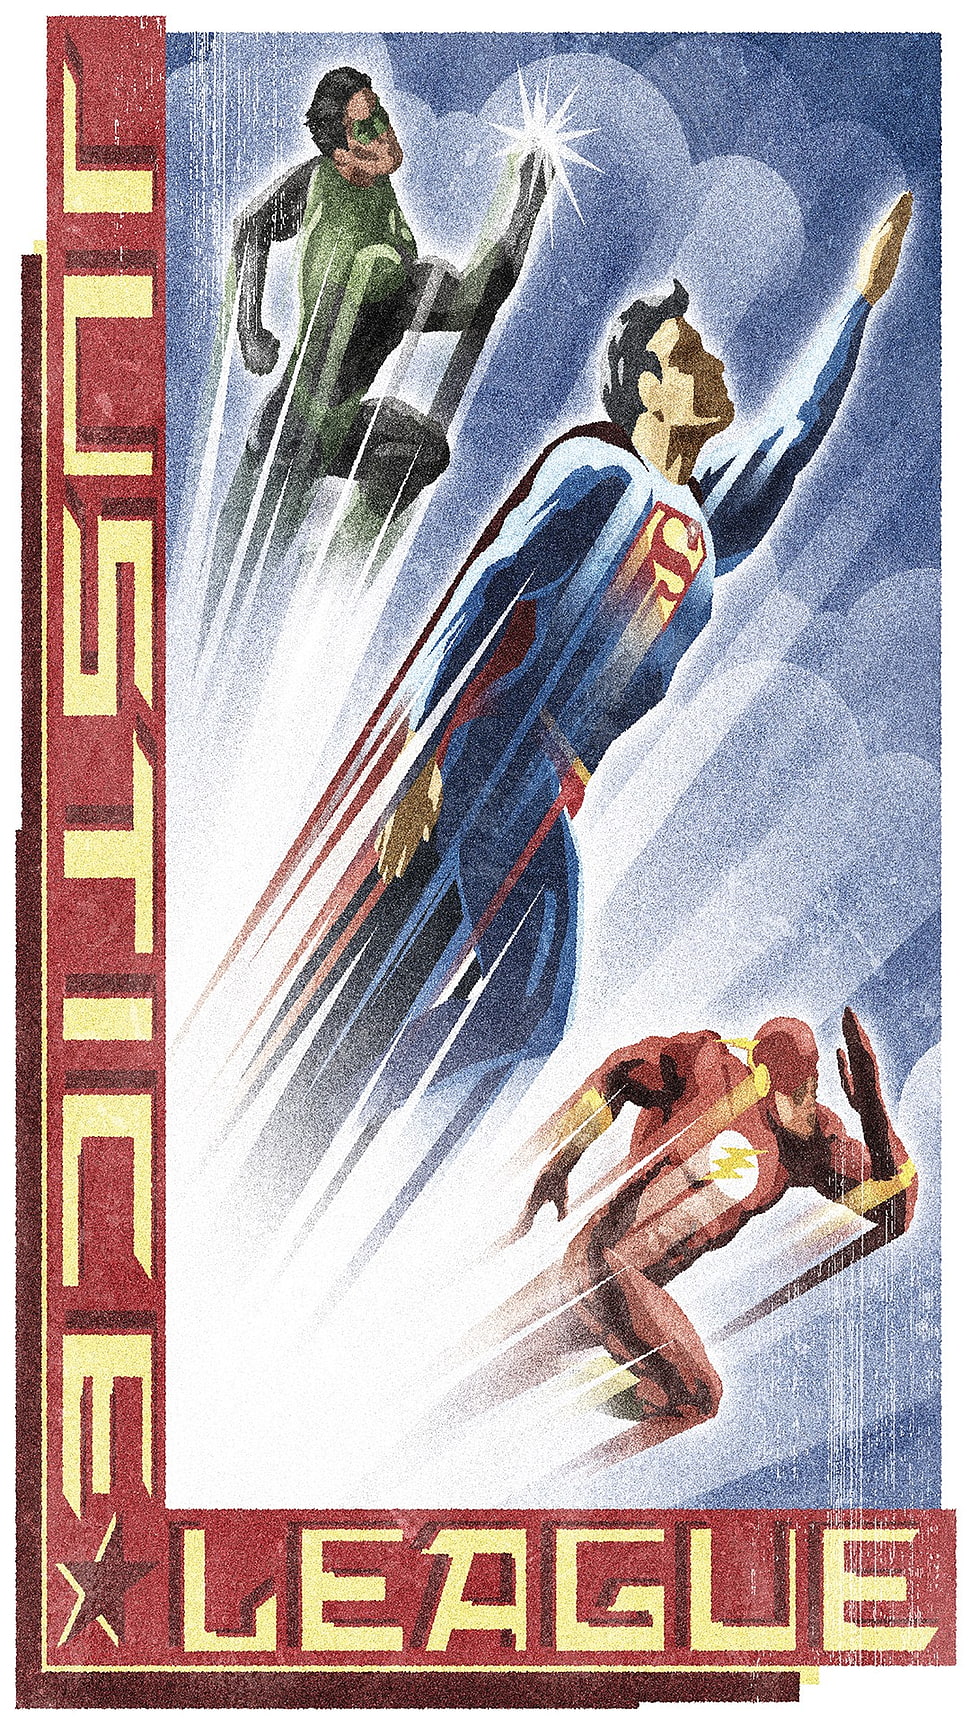 Justice League comic book, Justice League, men, Batman logo, Superman HD wallpaper